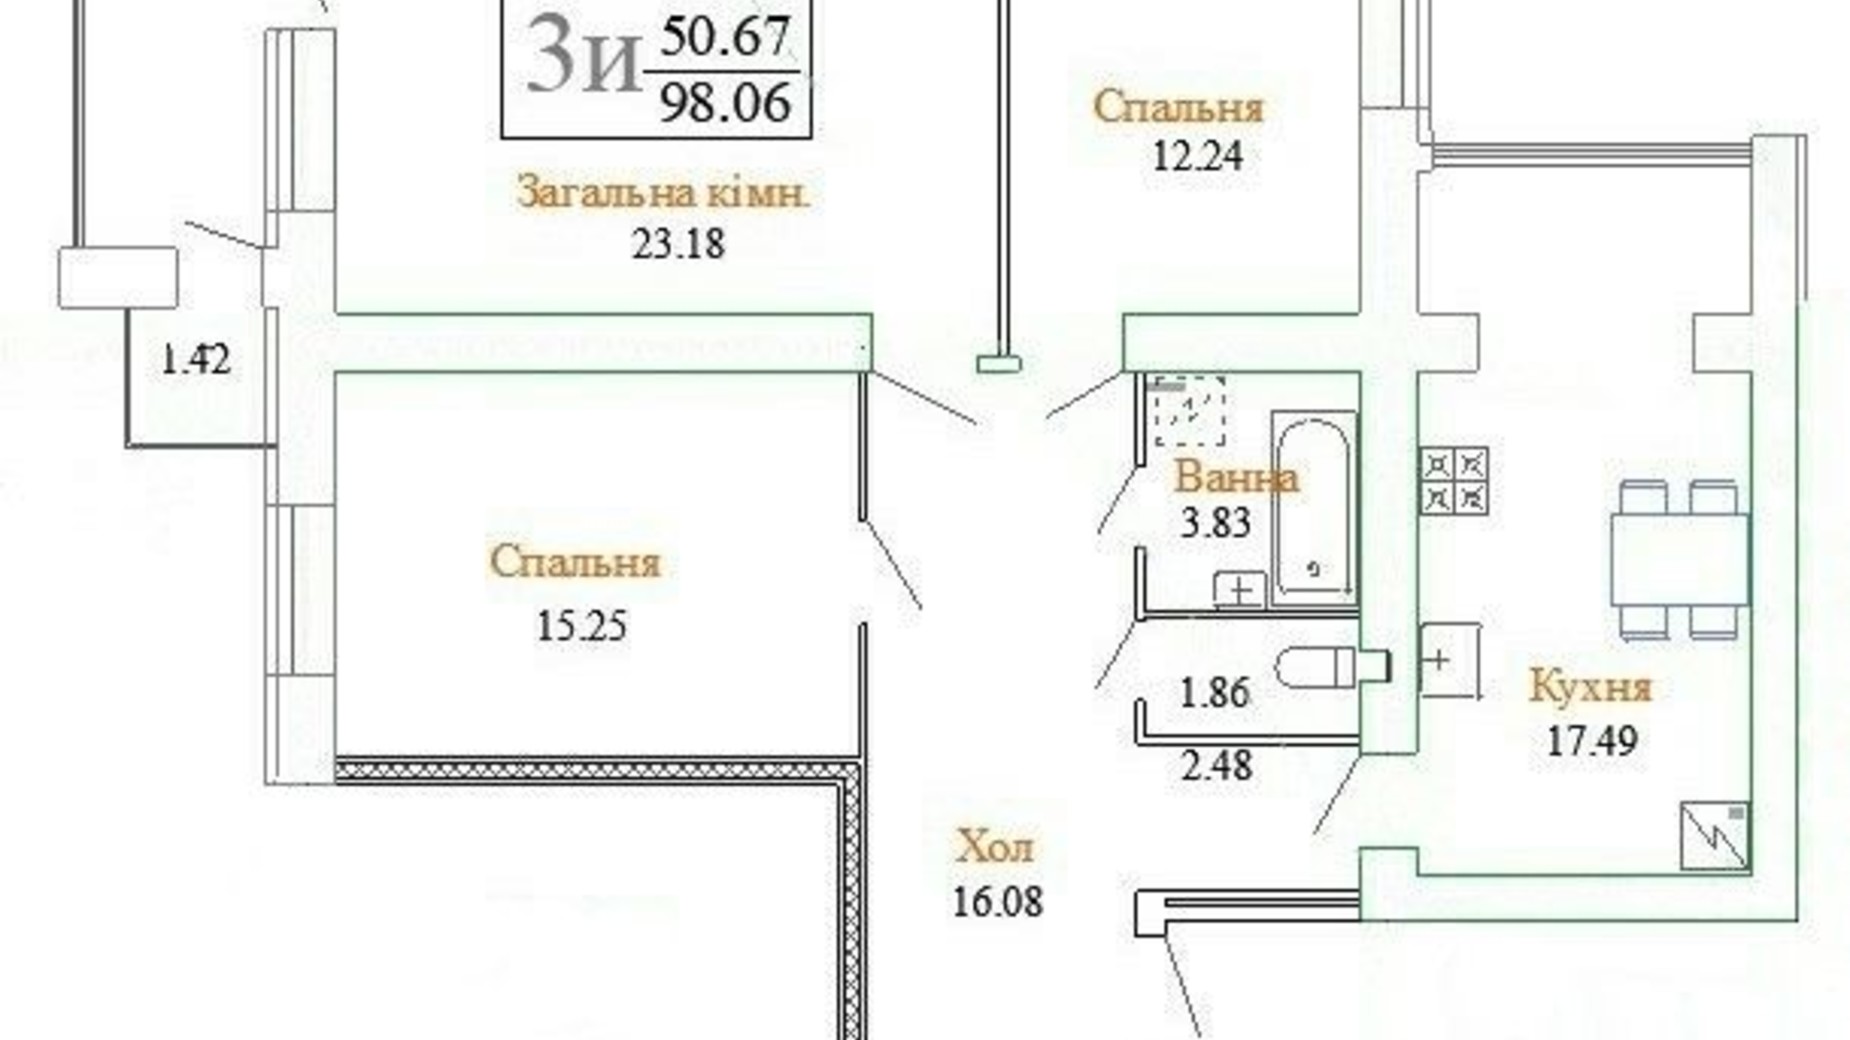 Планировка 3-комнатной квартиры в ЖК ул. Плоская, 23/1 98.06 м², фото 350369